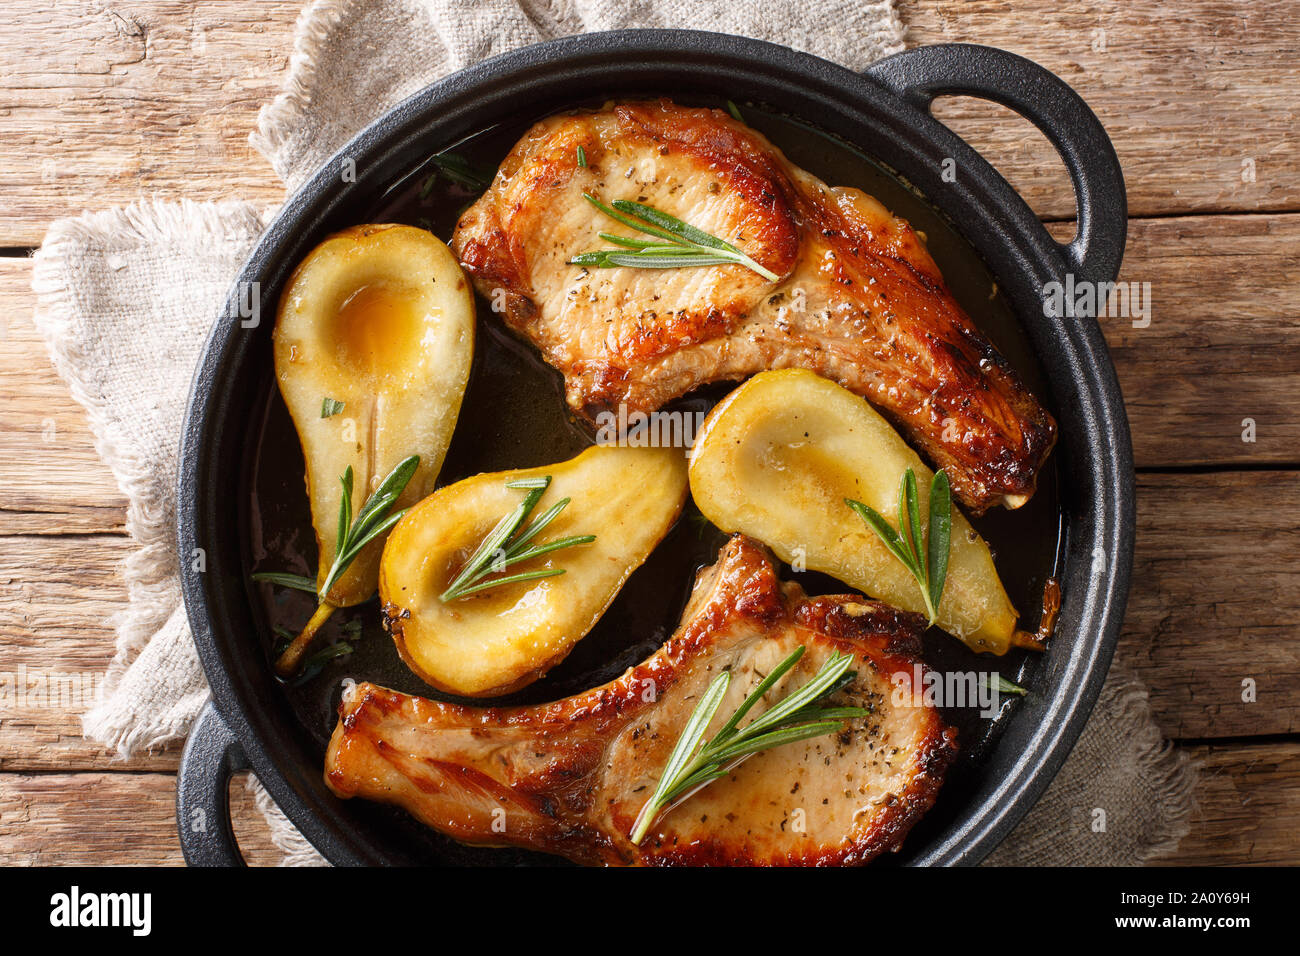 Maison de vacances recette de côtelettes de porc au four avec les poires et romarin en sauce au miel servi dans une casserole sur la table. Haut horizontale Vue de dessus Banque D'Images